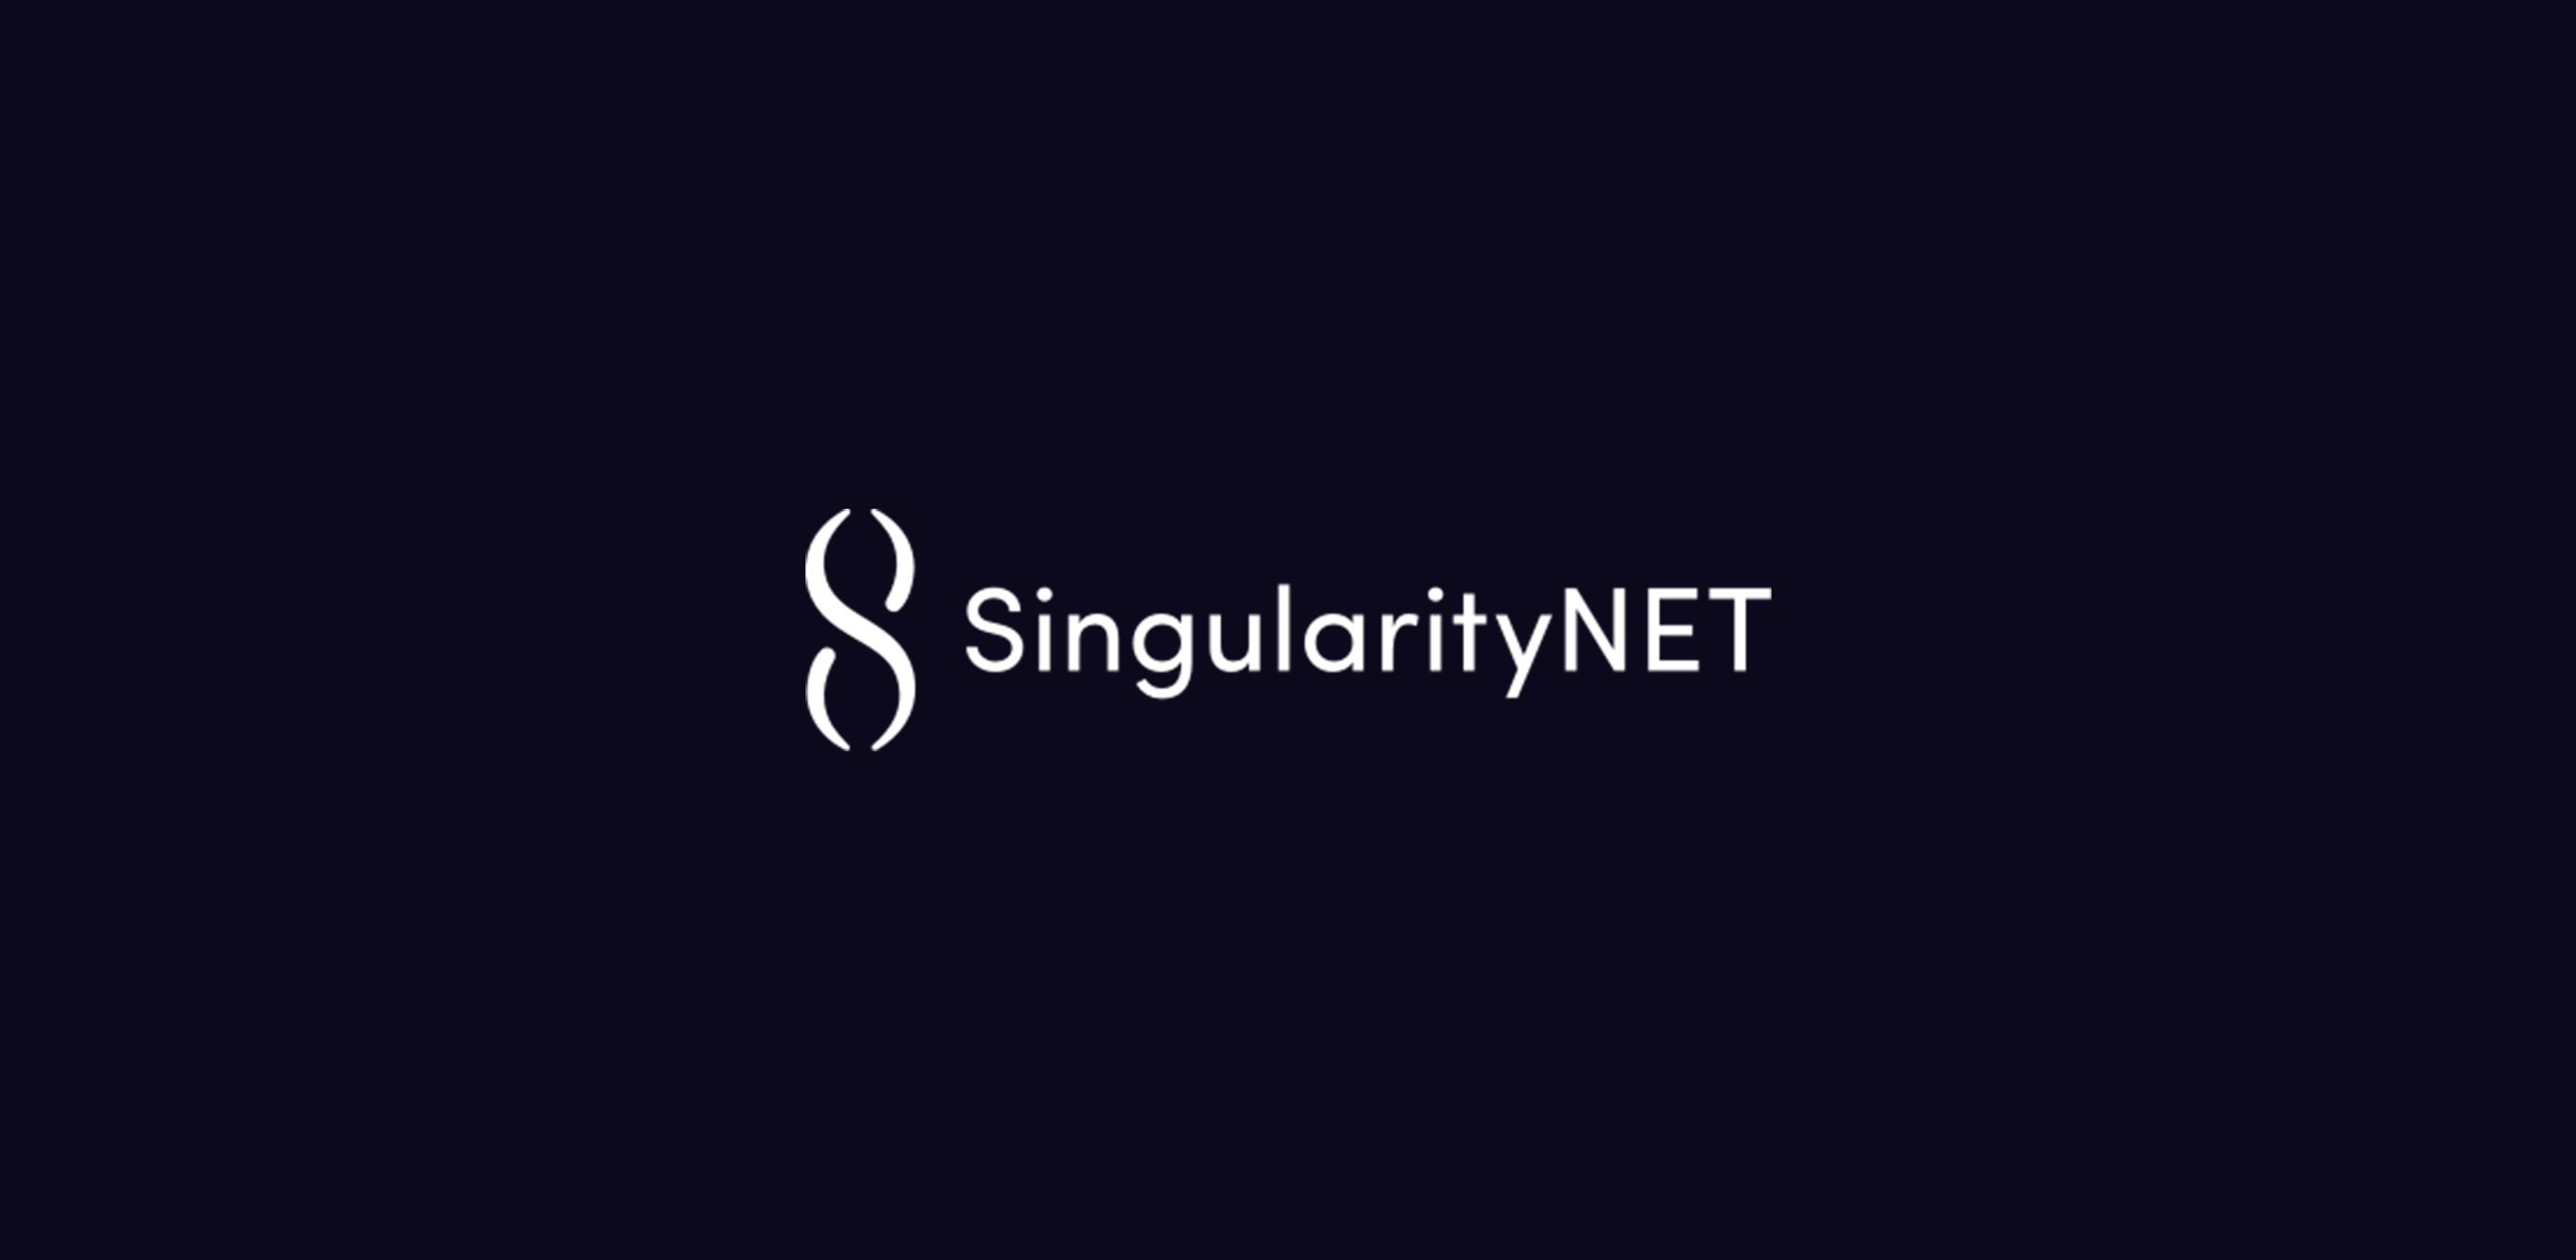 SingularityNET (AGIX) Scores 16% In A Week - Will It Test $1?